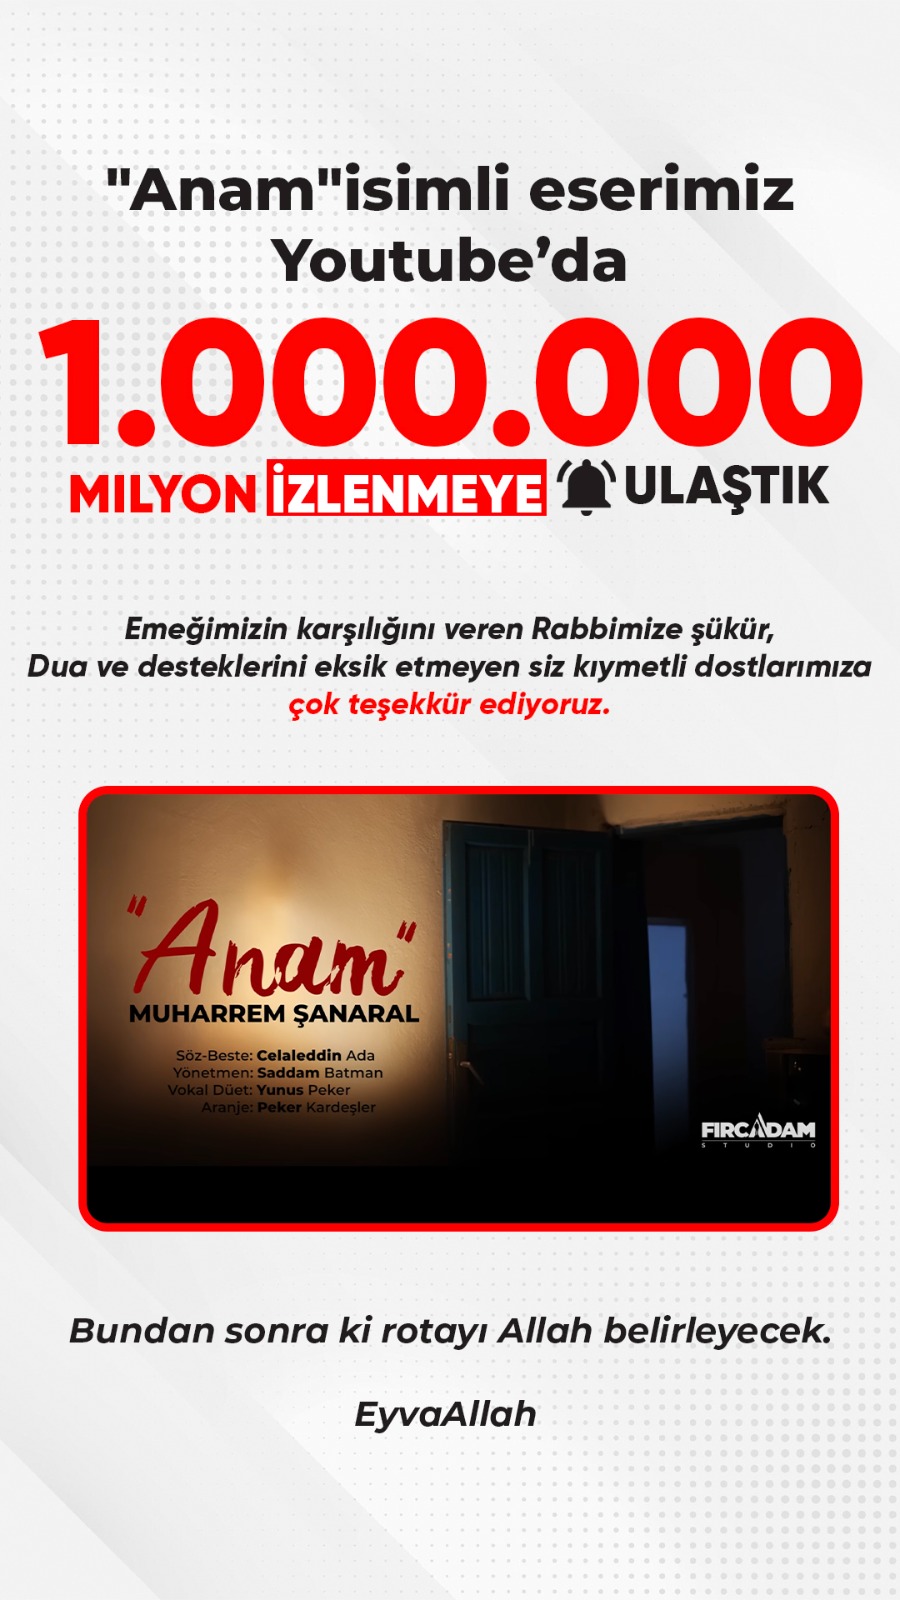 Muharrem Şanaral'ın 'Anam' Eseri 1 Milyon İzlenmeye Ulaştı (1)